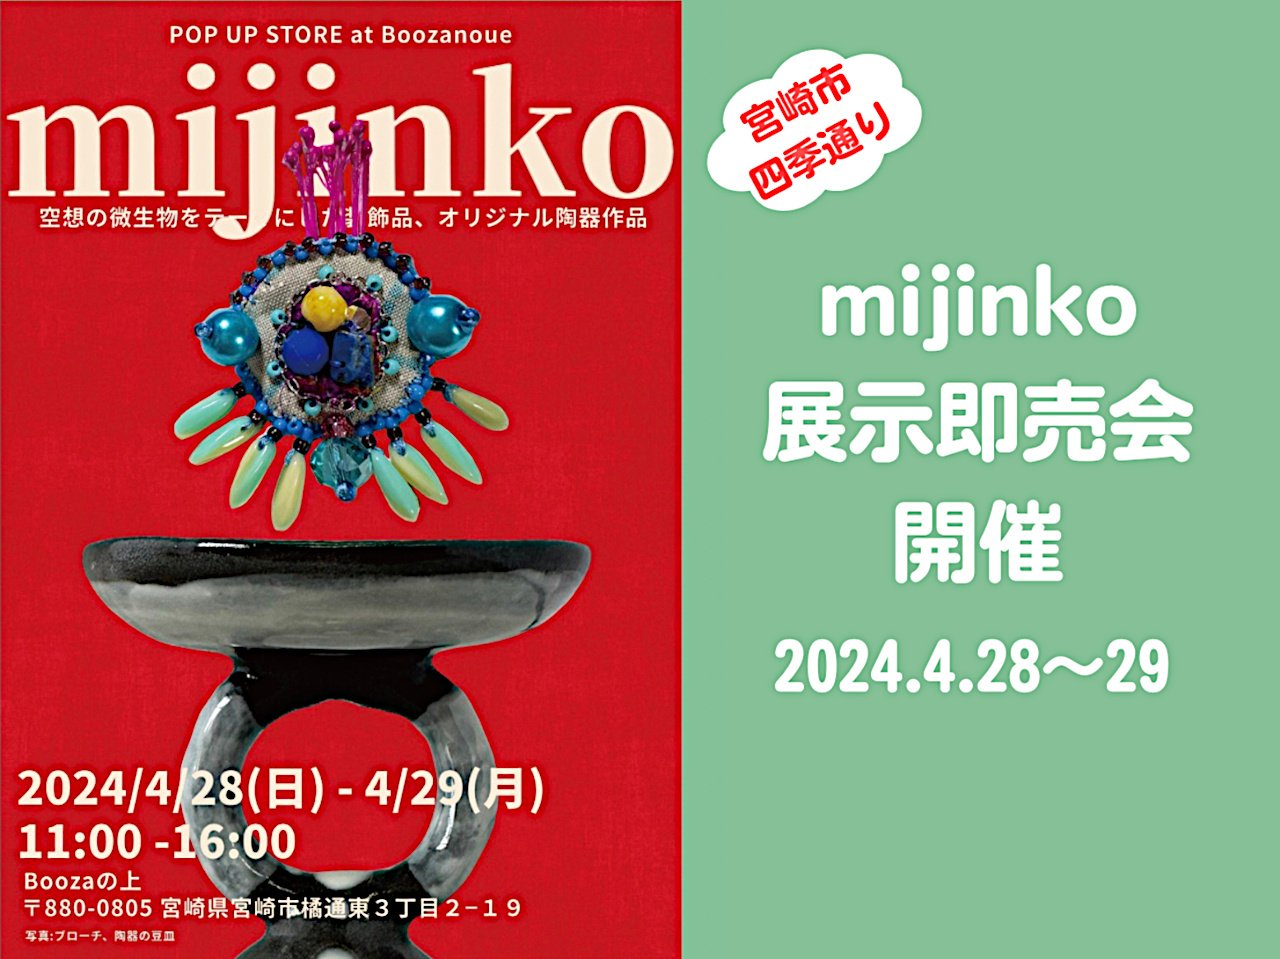 mijinko展示即売会アイキャッチ画像